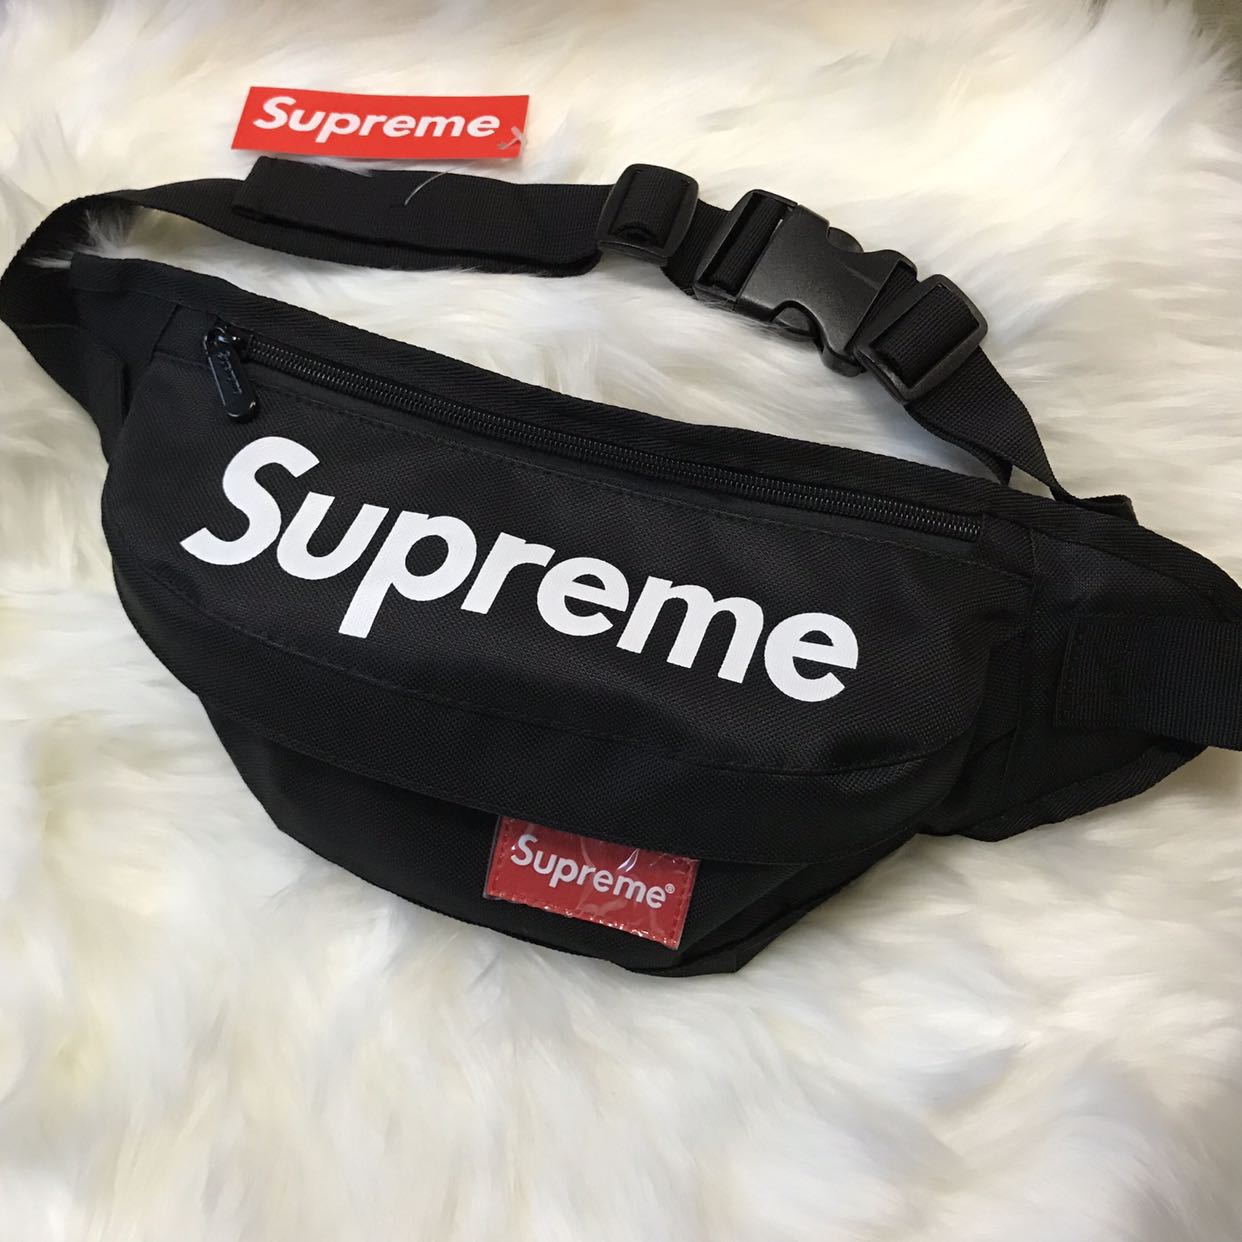 waist bag supreme price